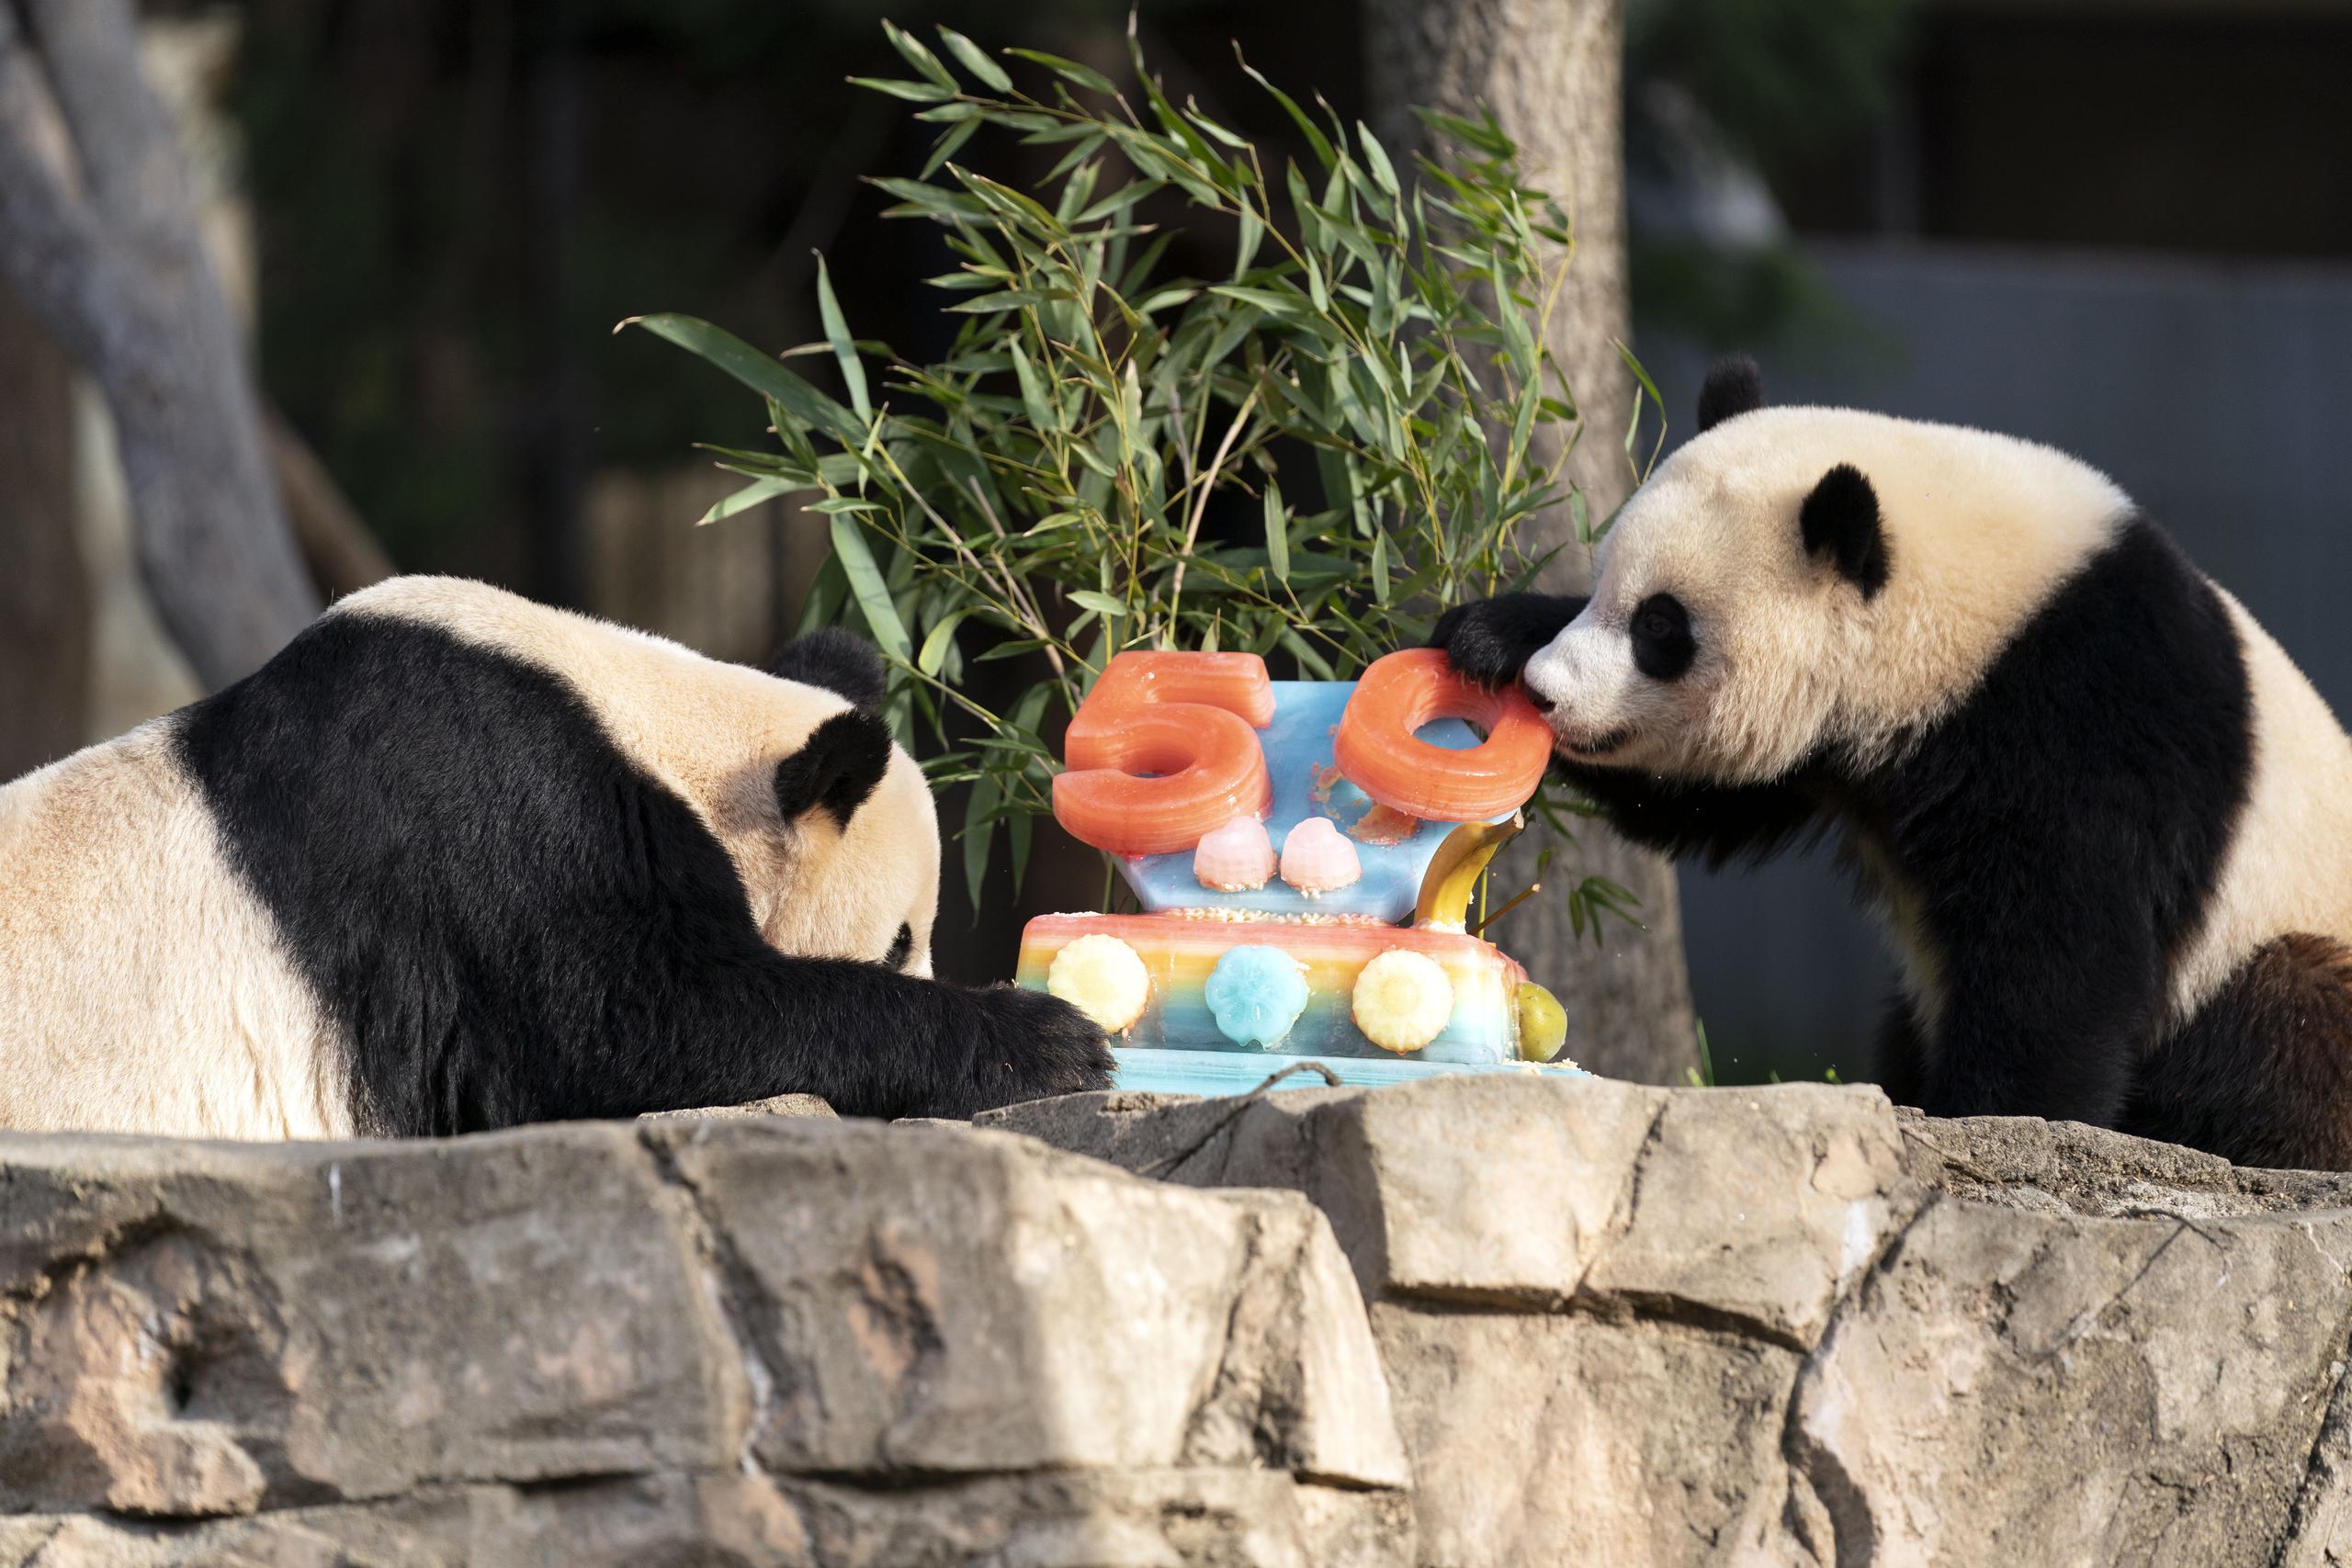 Además de celebrar el acuerdo de 1972 derivado de la histórica visita del presidente Richard Nixon a China, la celebración del sábado resaltó el éxito del programa global de cría de pandas, que ha ayudado a rescatar a los animales del borde de la extinción.